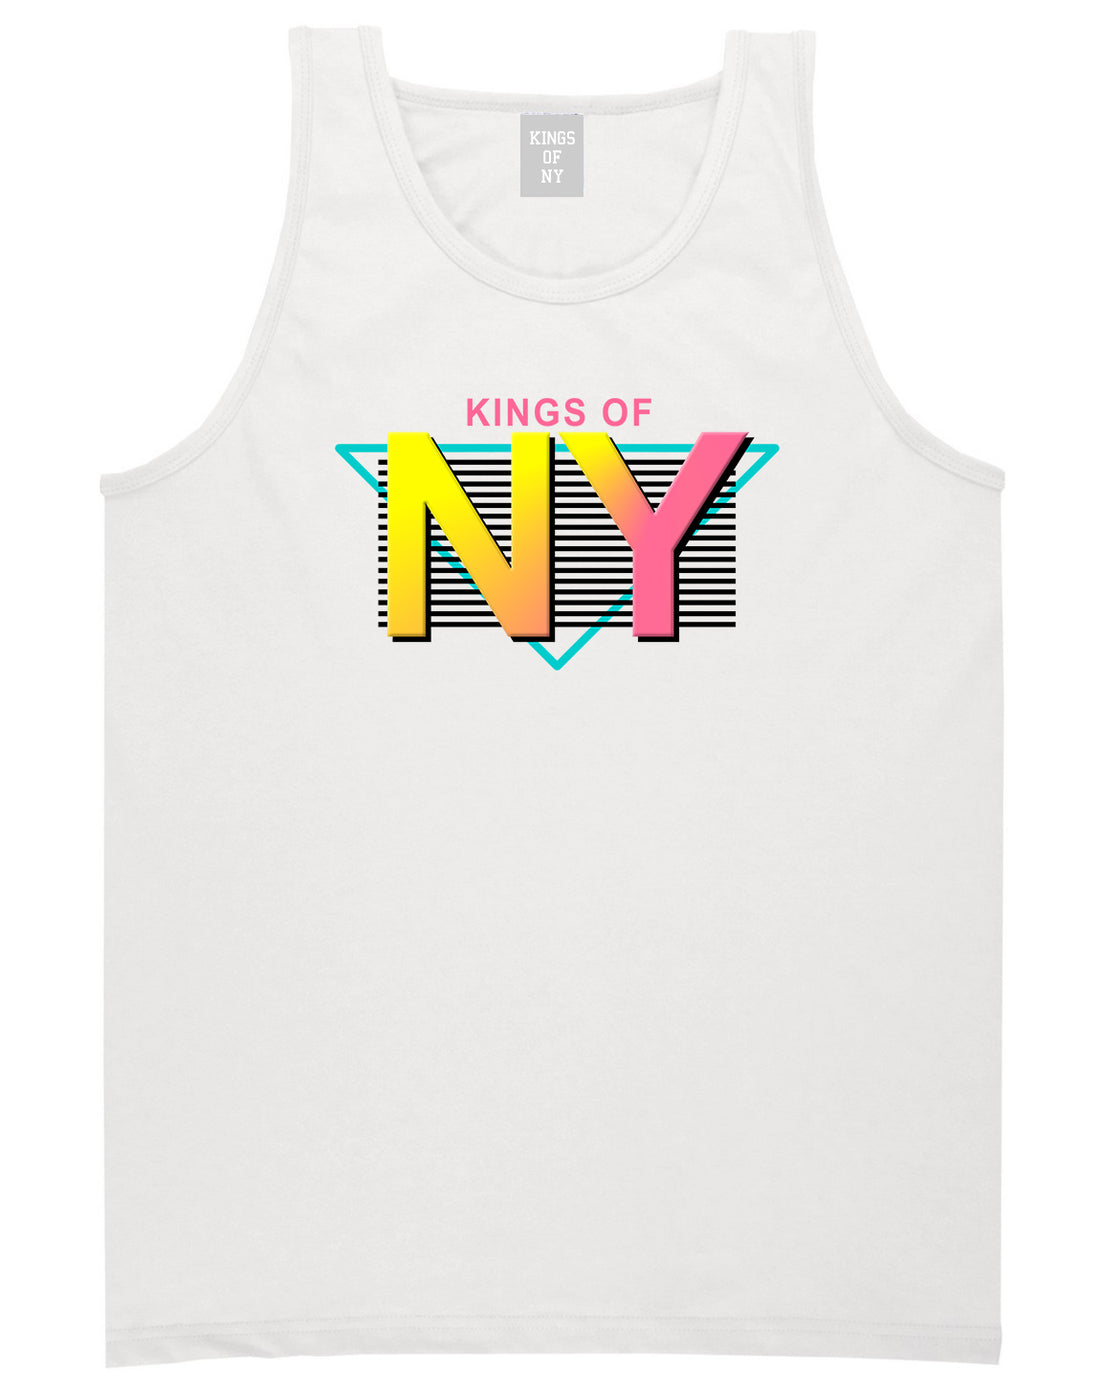 Kings Of NY 80s Retro Mens Tank Top Shirt White by Kings Of NY